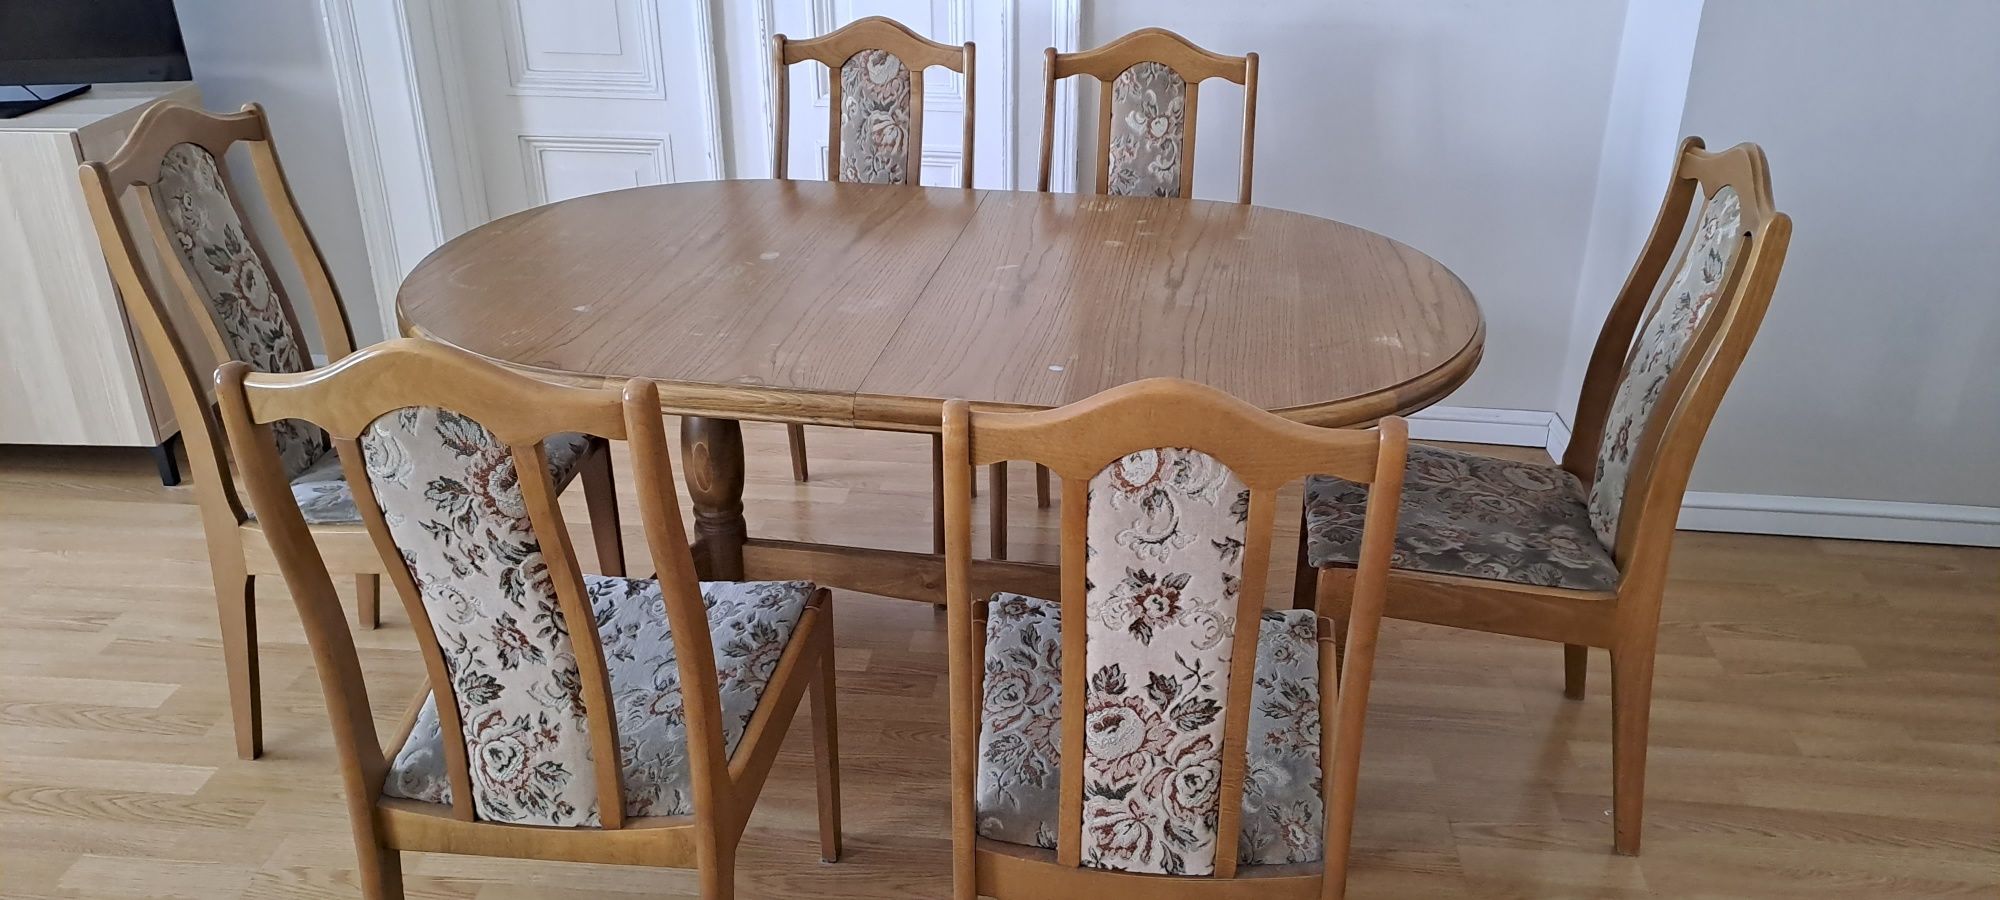 Stół dębowy z tapicerowanymi krzesłami